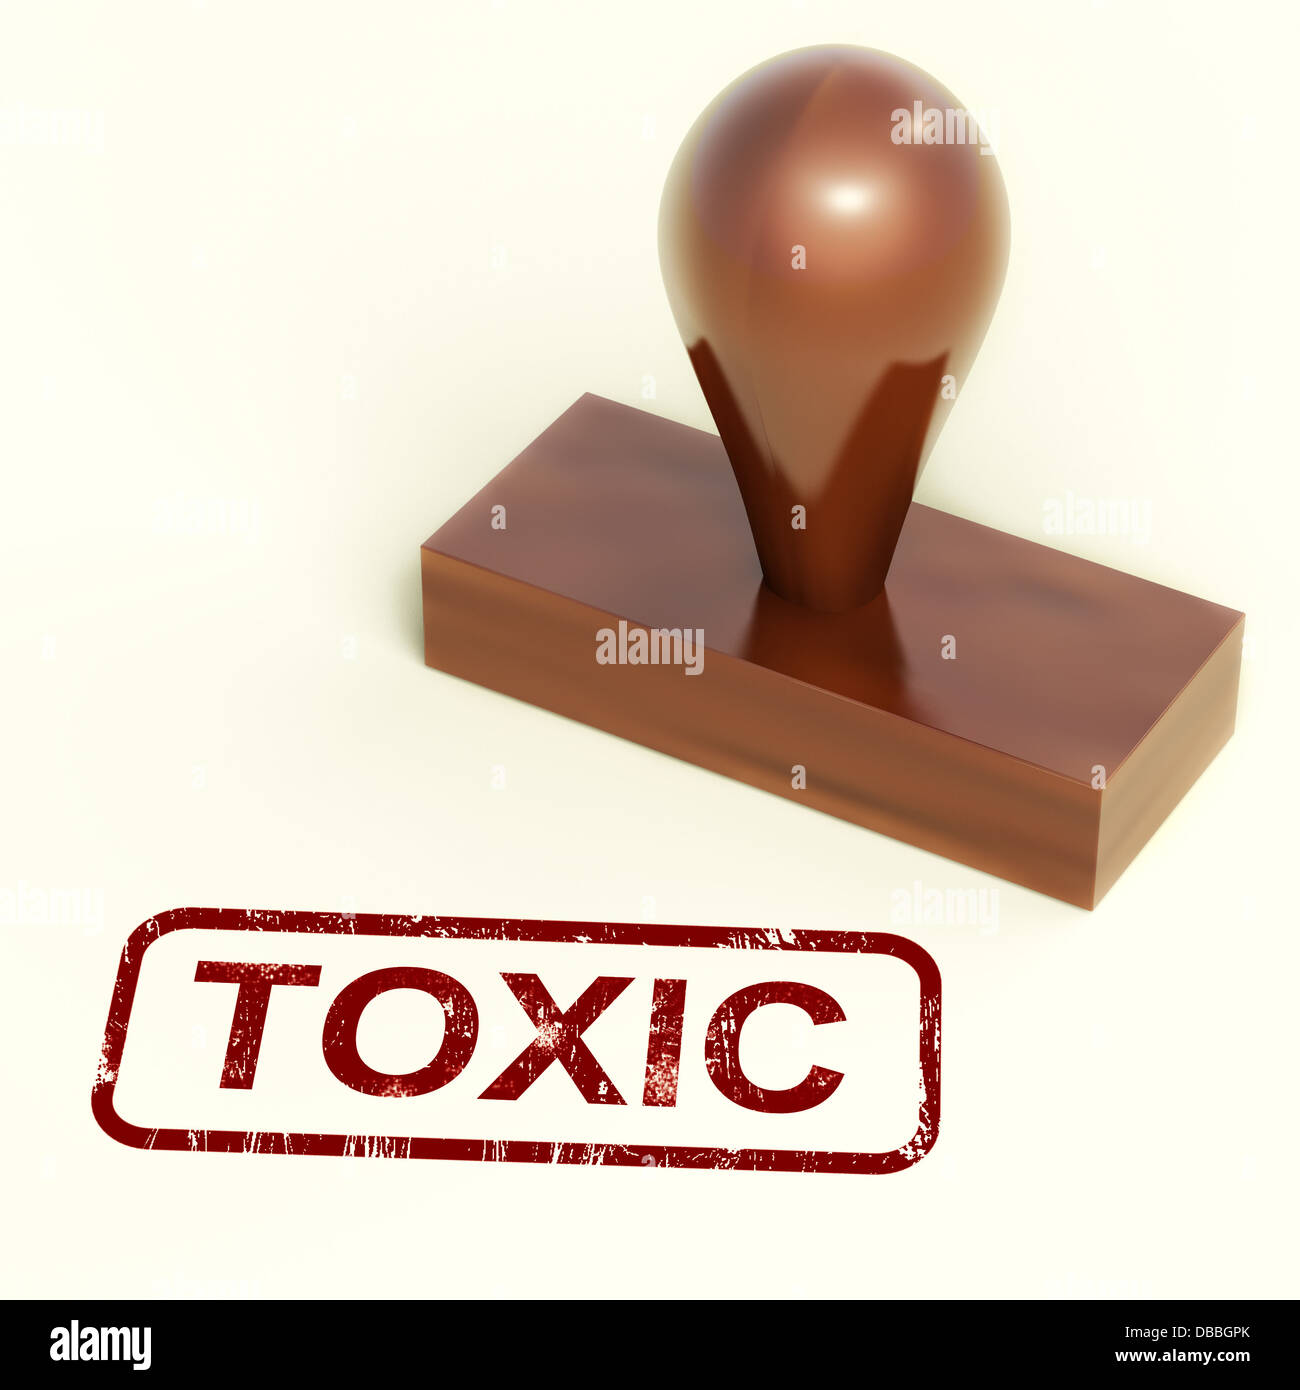 Giftige Stempel zeigt giftige und schädliche Substanzen Stockfoto